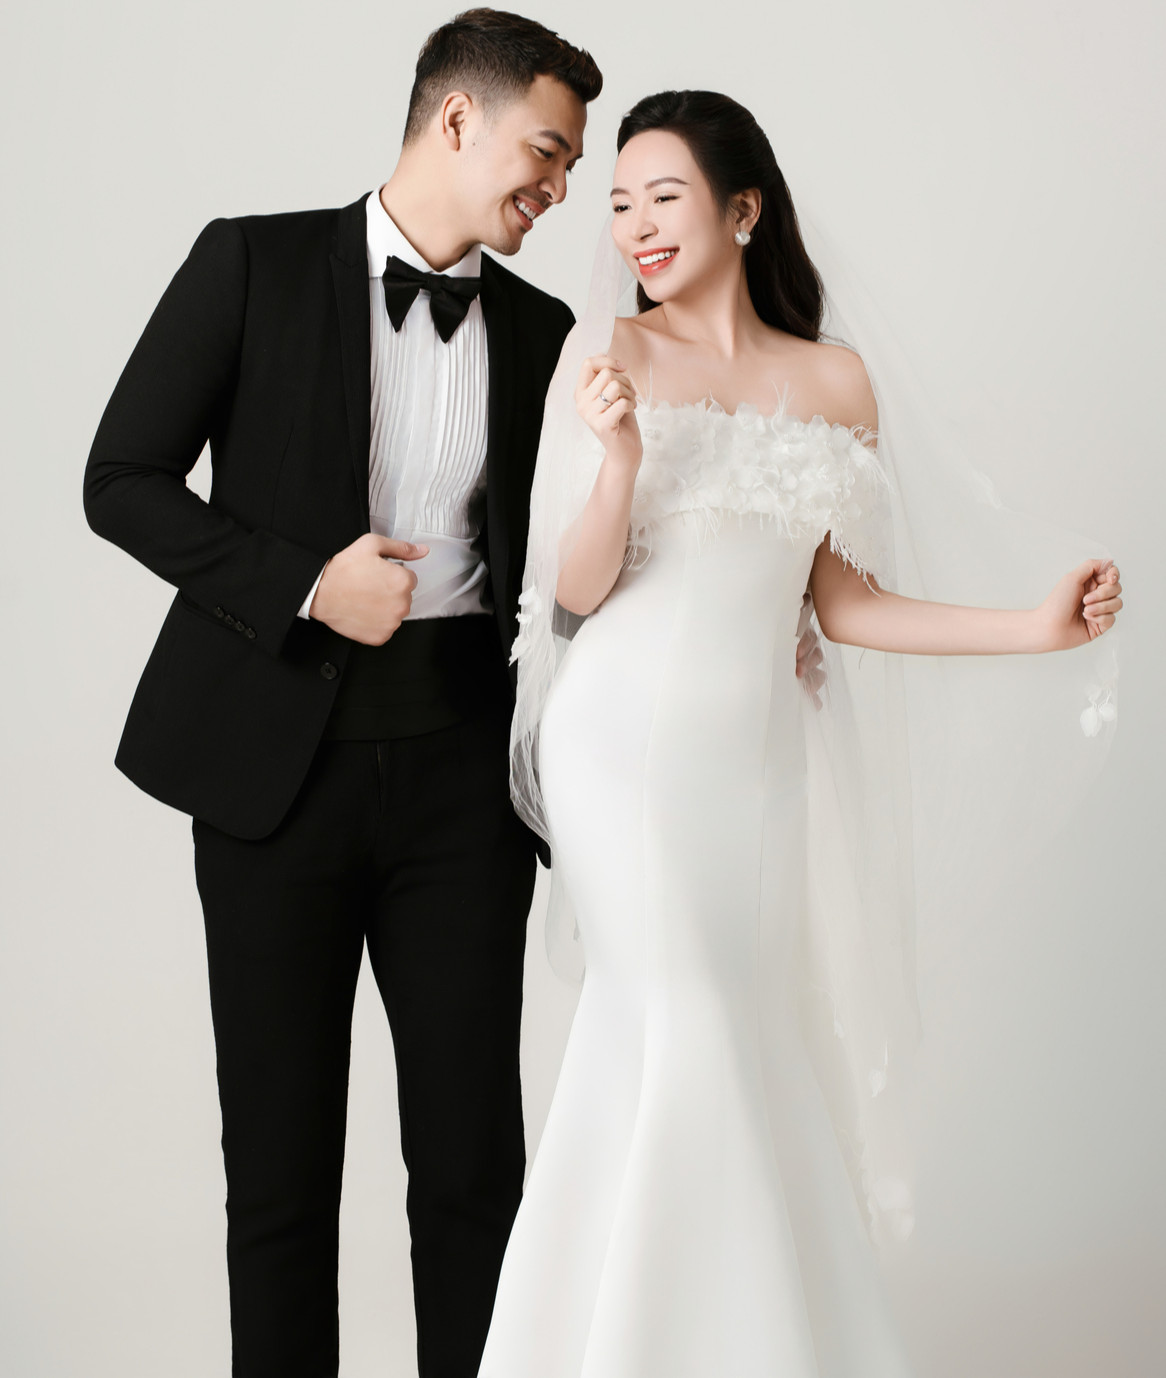 Diễn viên Kim Oanh công khai chồng, không phải công nhân mà là nam diễn viên quen mặt với khán giả VTV - ảnh 2